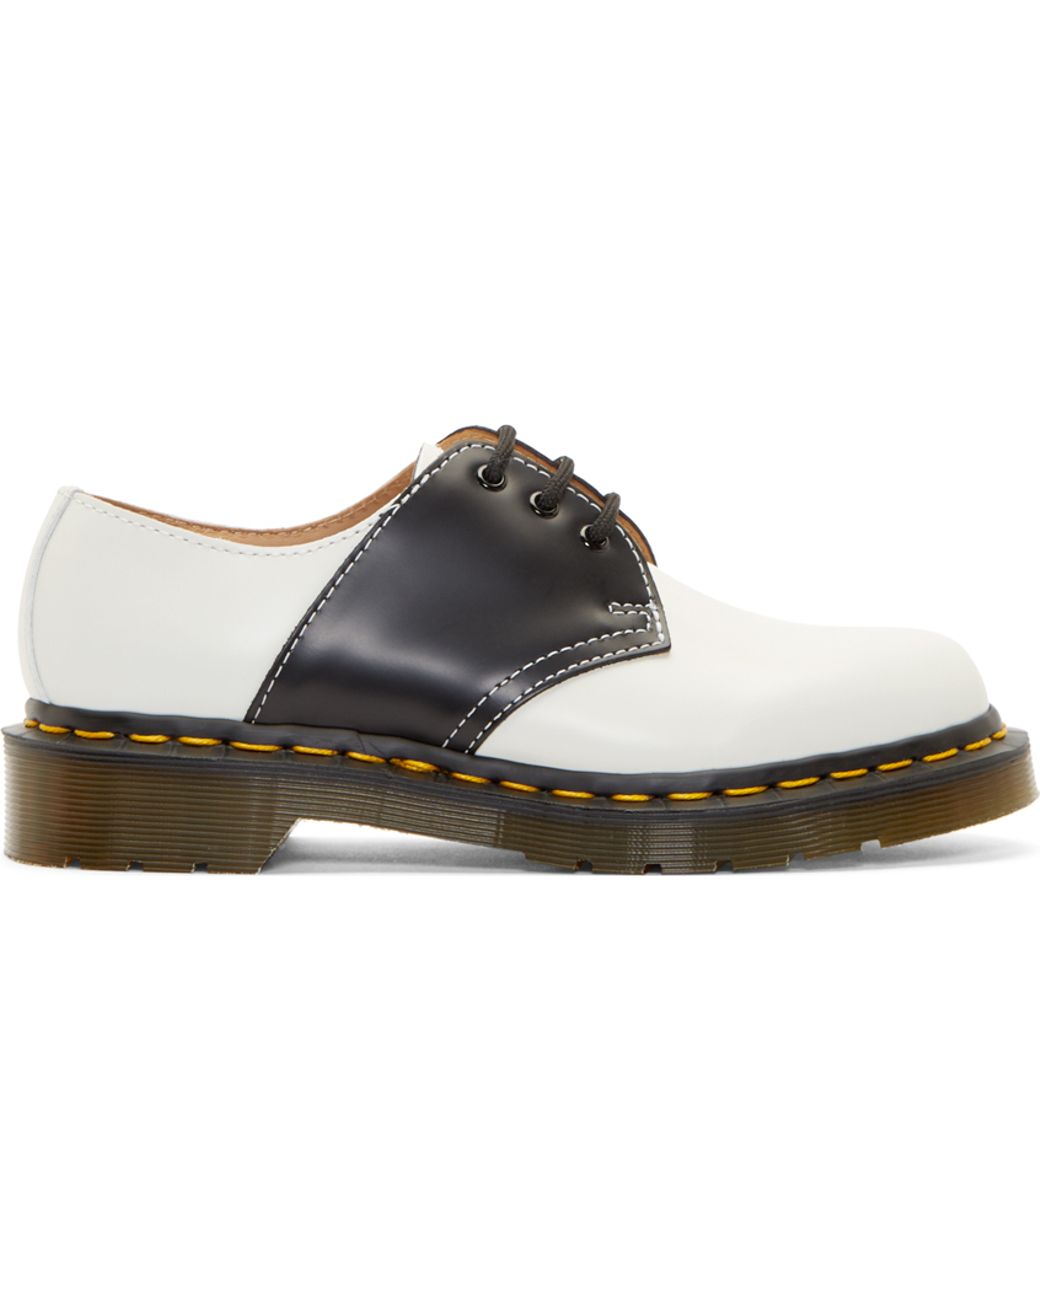 Comme des Garçons White And Black Dr. Martens Edition Saddle Shoes | Lyst